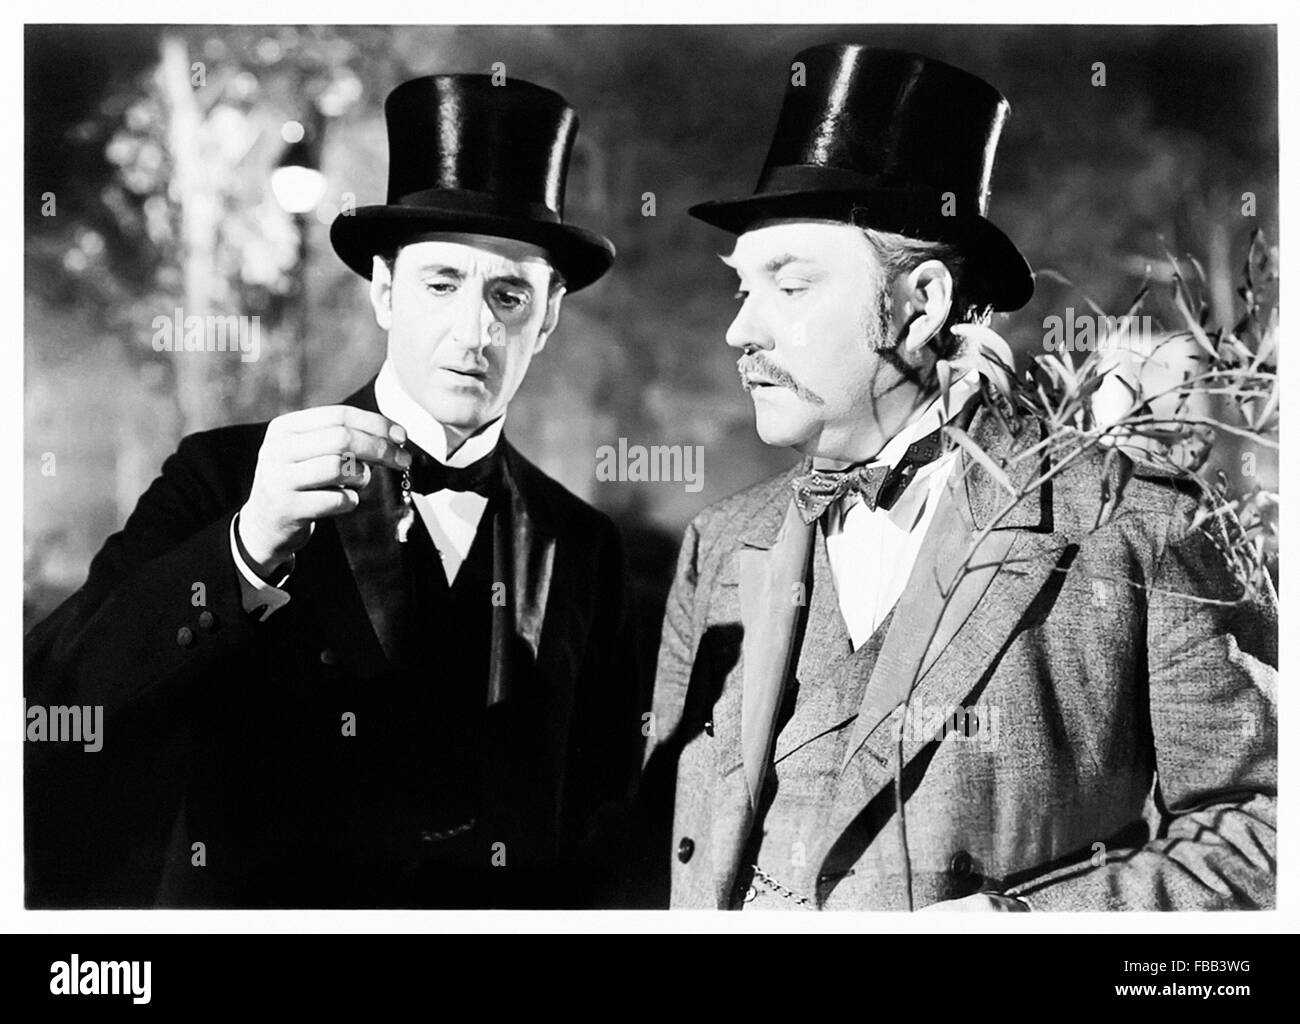 Werbung für "The Adventures of Sherlock Holmes" 1939 Film mit Basil Rathbone (Holmes) und Nigel Bruce (Watson) fotografieren. Stockfoto